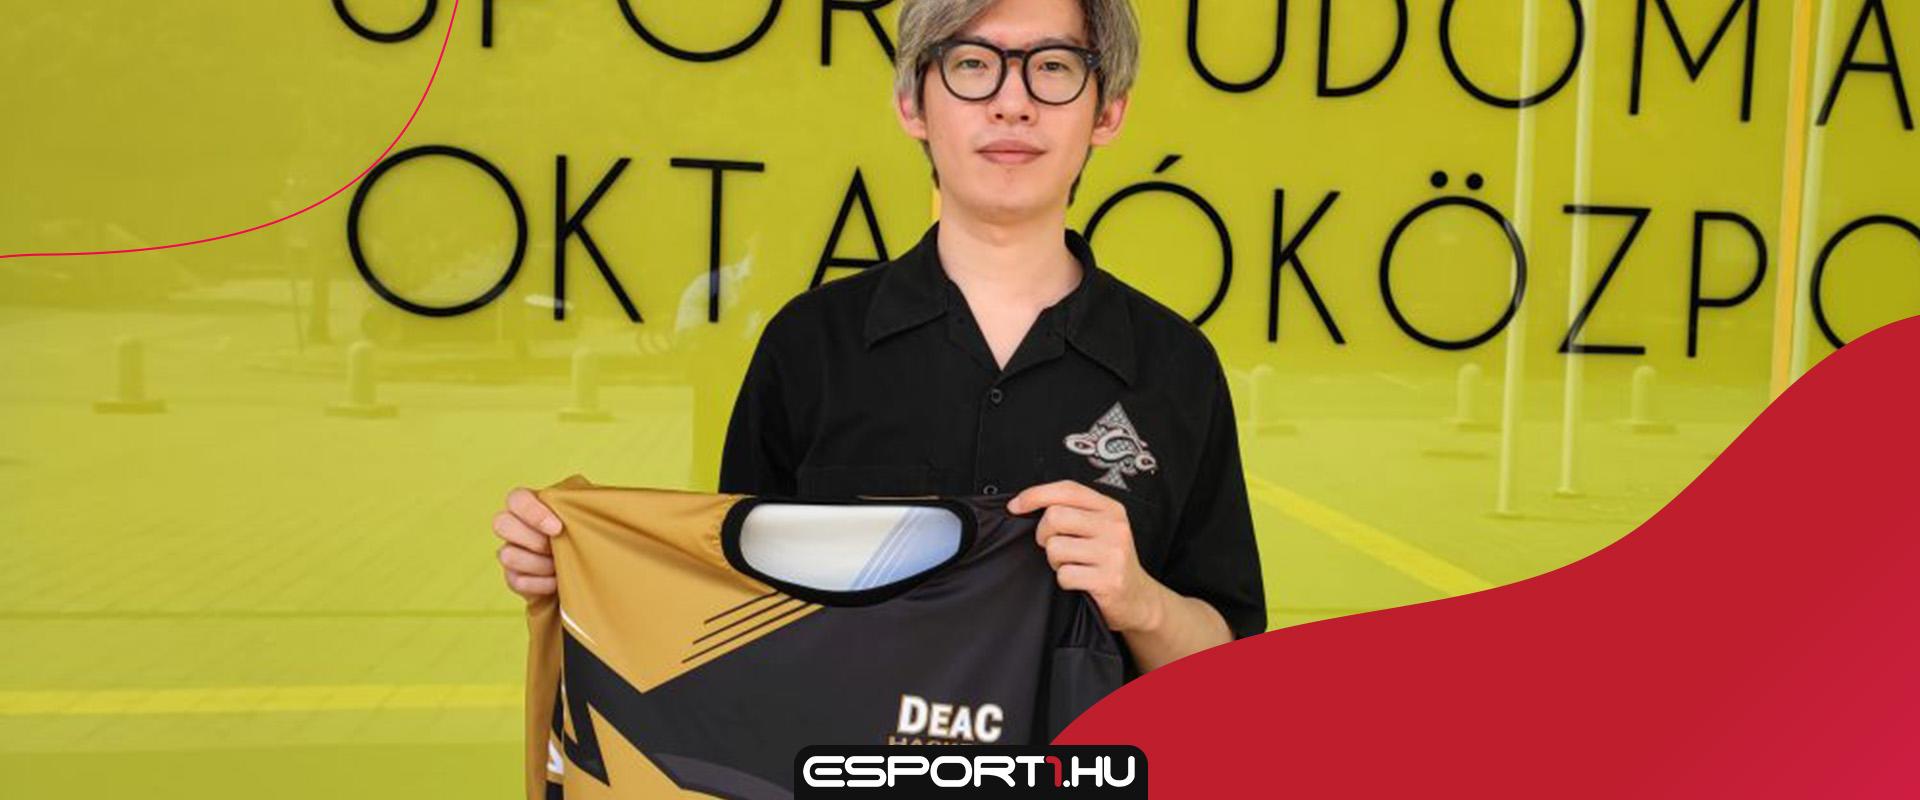 Az egyik dél-koreai sztár e-sportoló a magyar DEAC csapatához igazolt